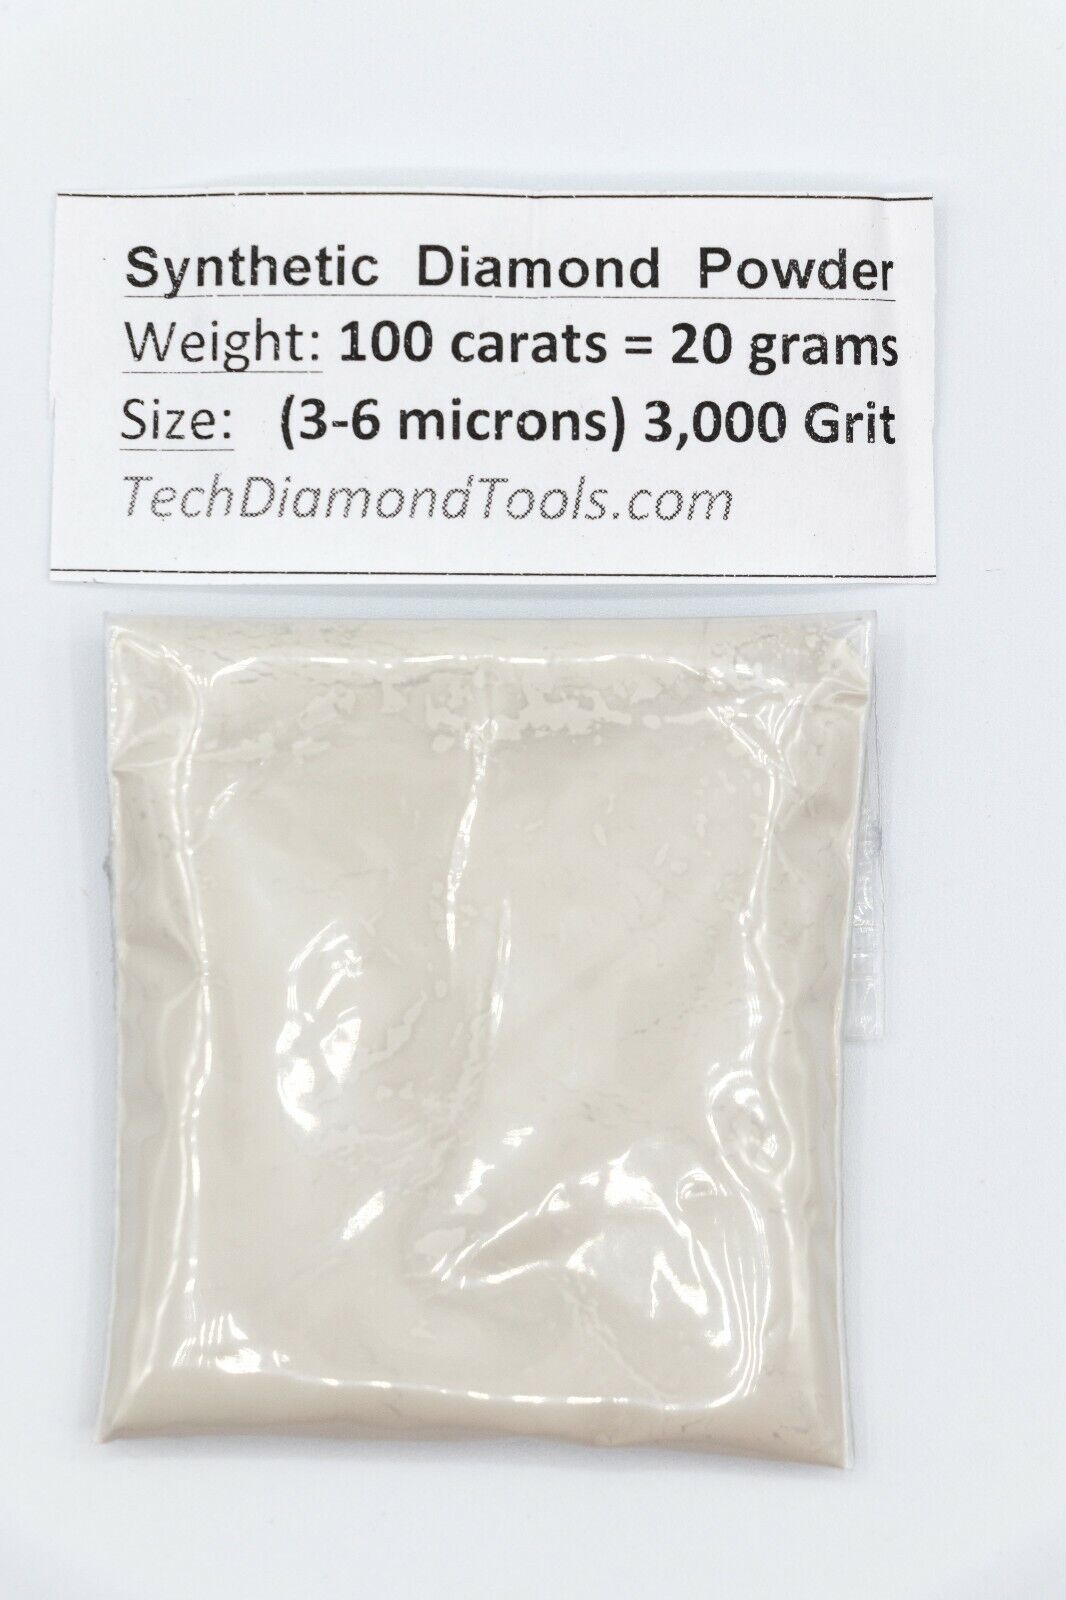 Diamond Powder Kit: 280, 600, 1200, 3000 Grit, Weight = 400 Carat = 80 Grams